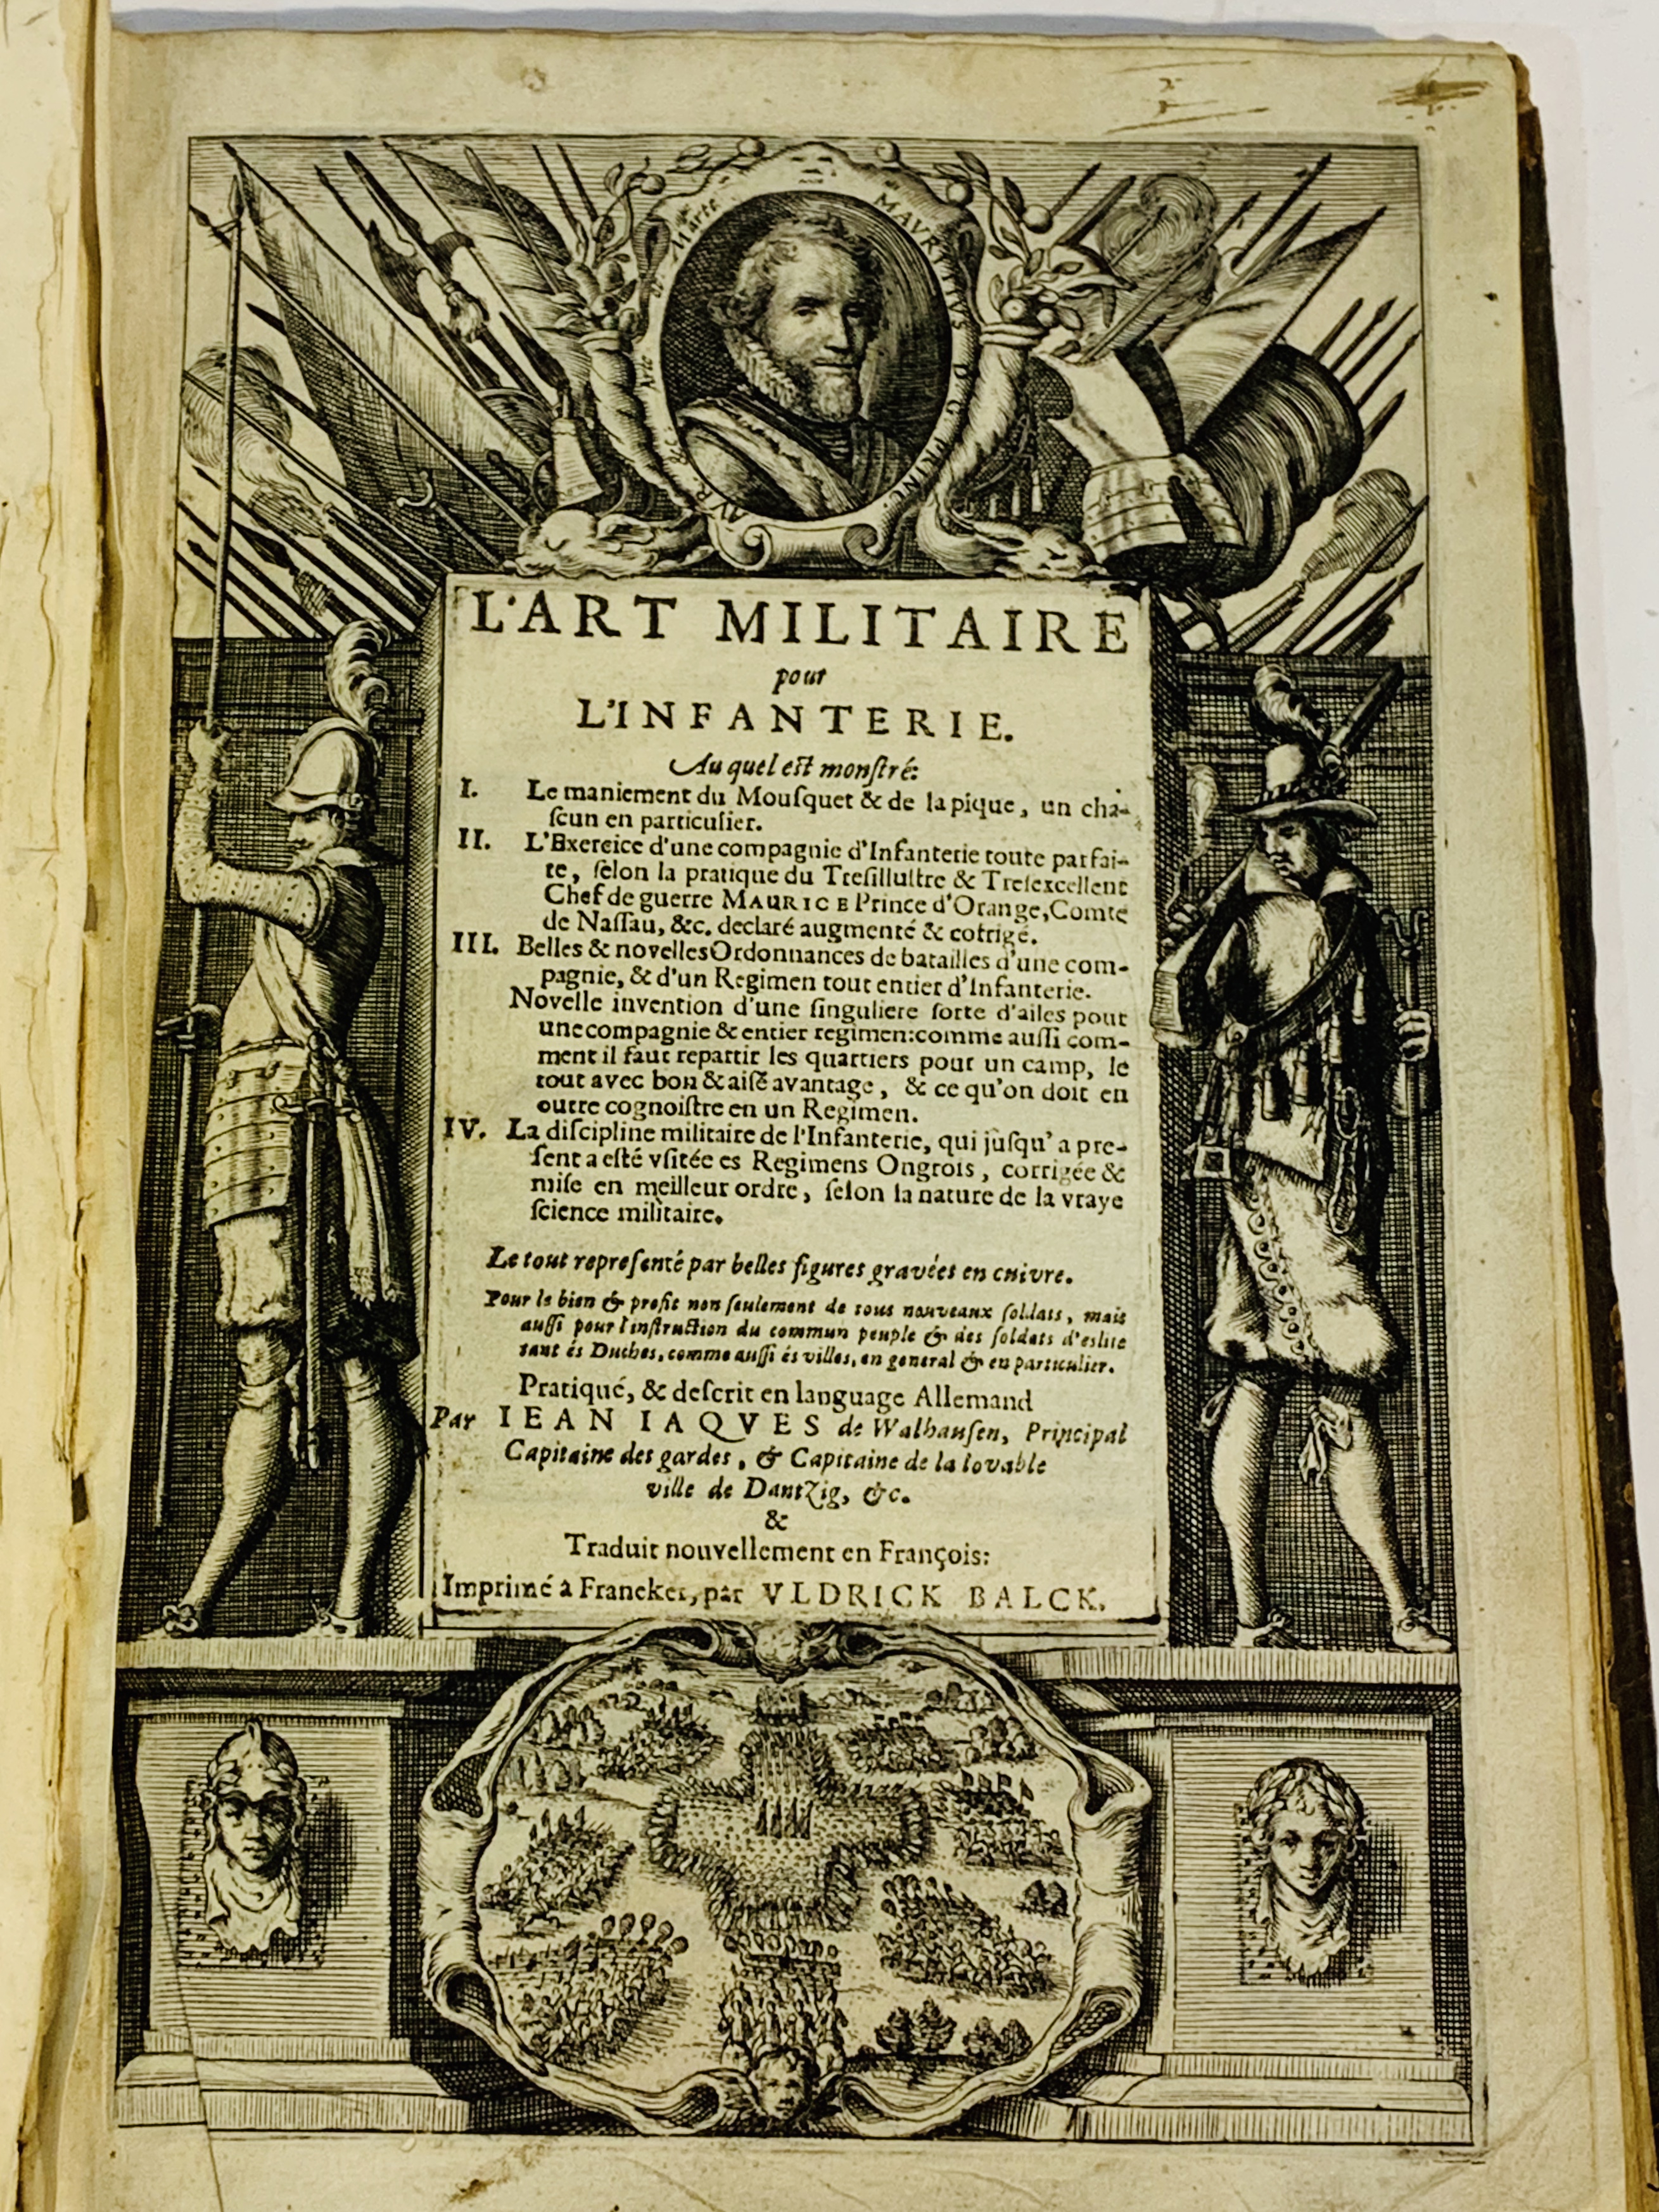 "L'Art Militaire pour L'Infanterie" by Jean Jacques de Walhausen, circa 1615. - Image 3 of 8